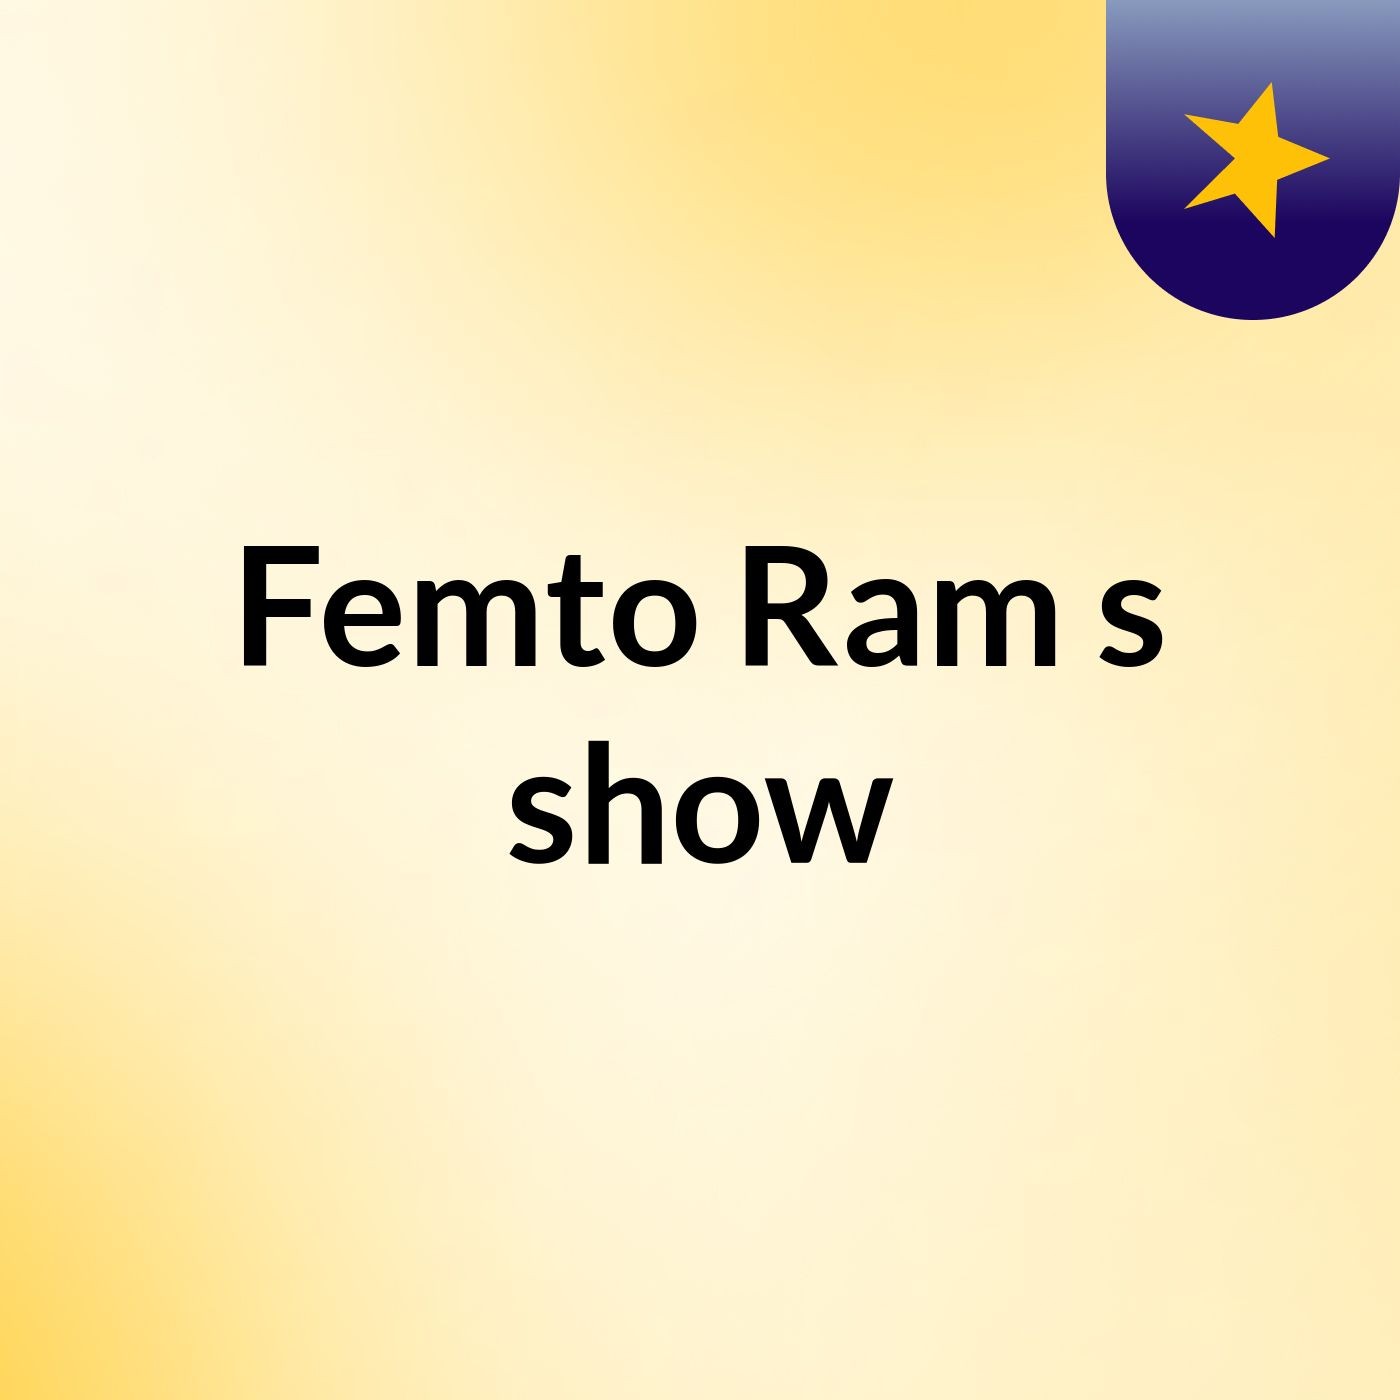 Femto Ram's show